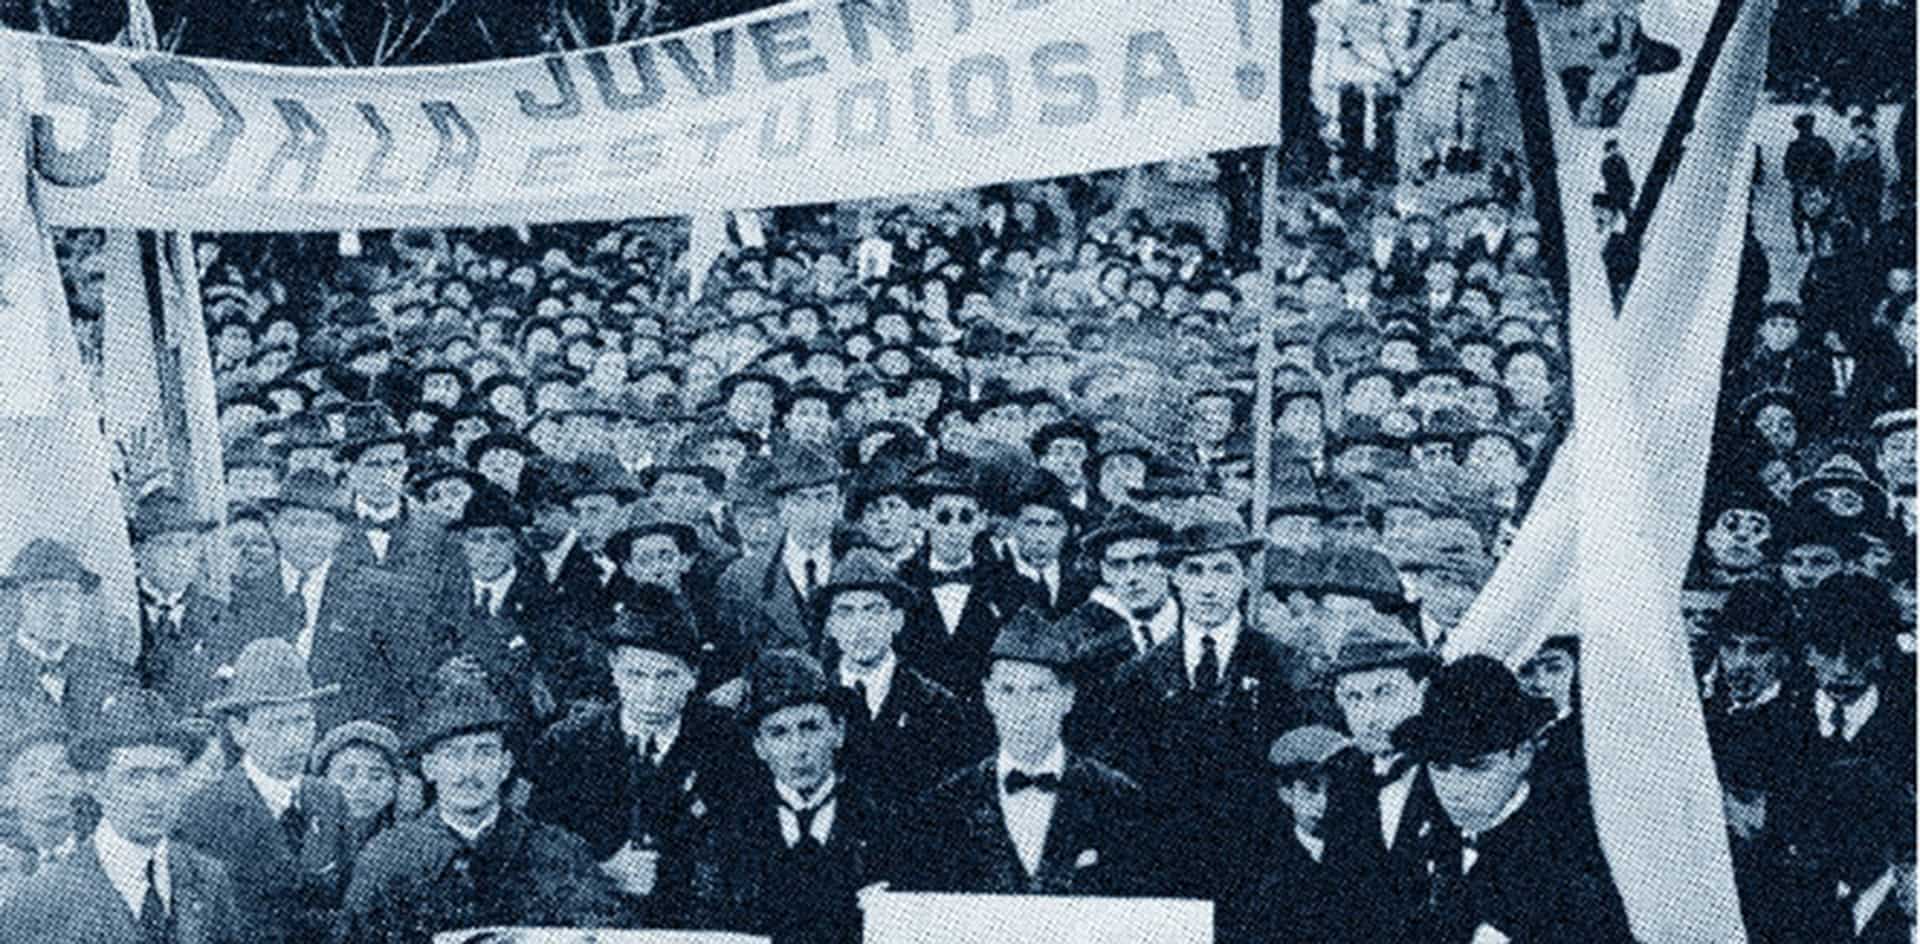 Reflexiones en el centenario de la Reforma Universitaria